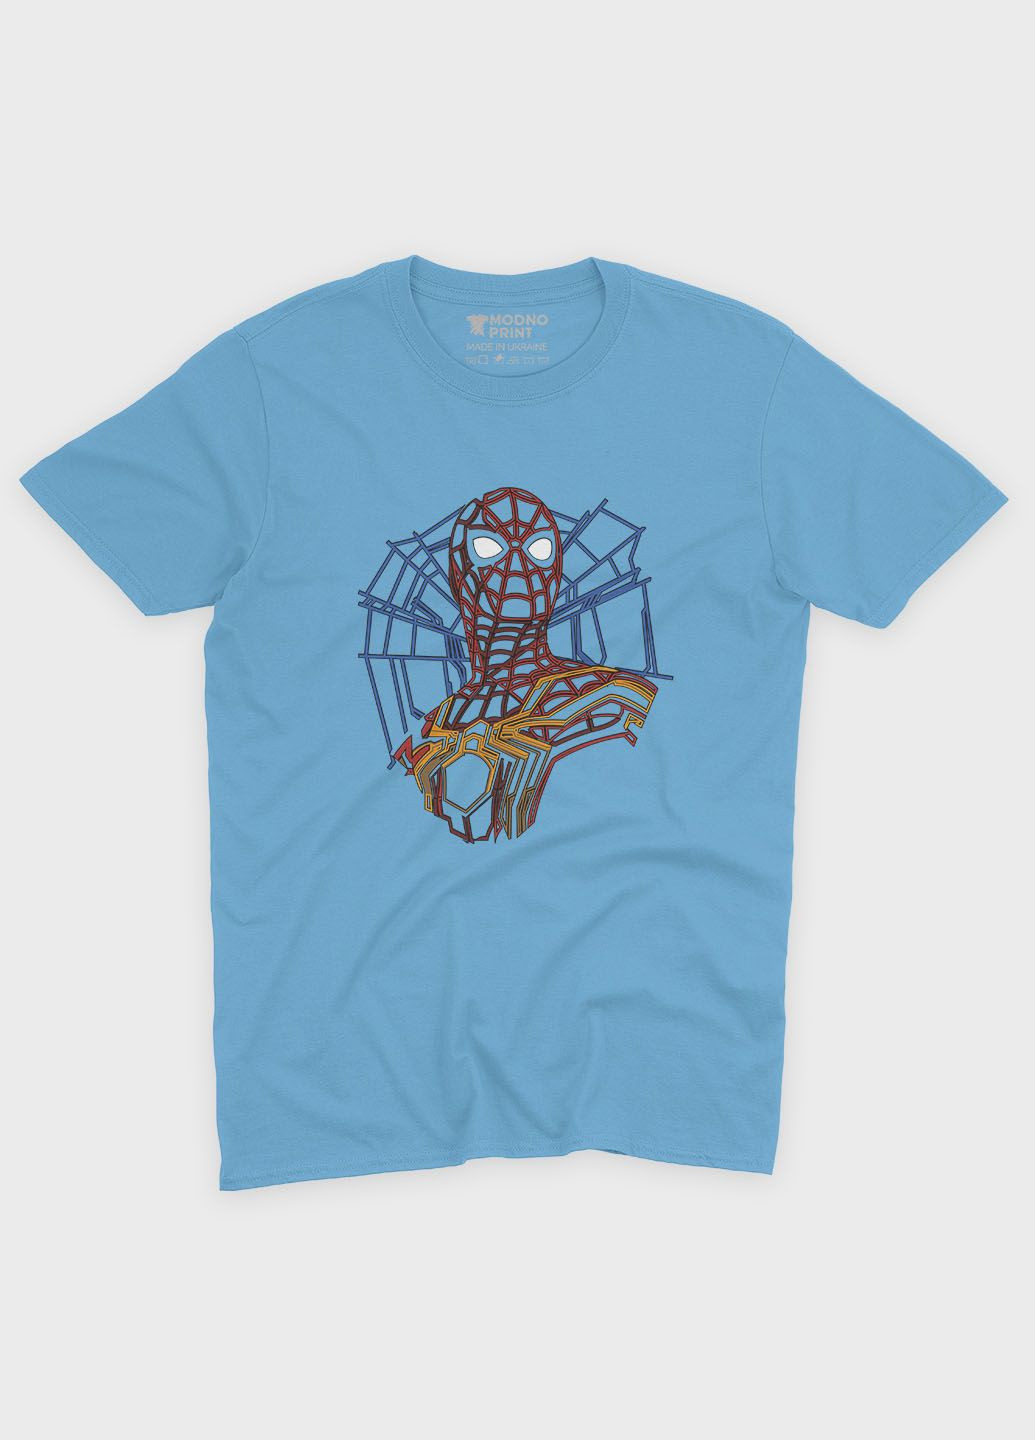 Голубая демисезонная футболка для мальчика с принтом супергероя - человек-паук (ts001-1-lbl-006-014-007-b) Modno